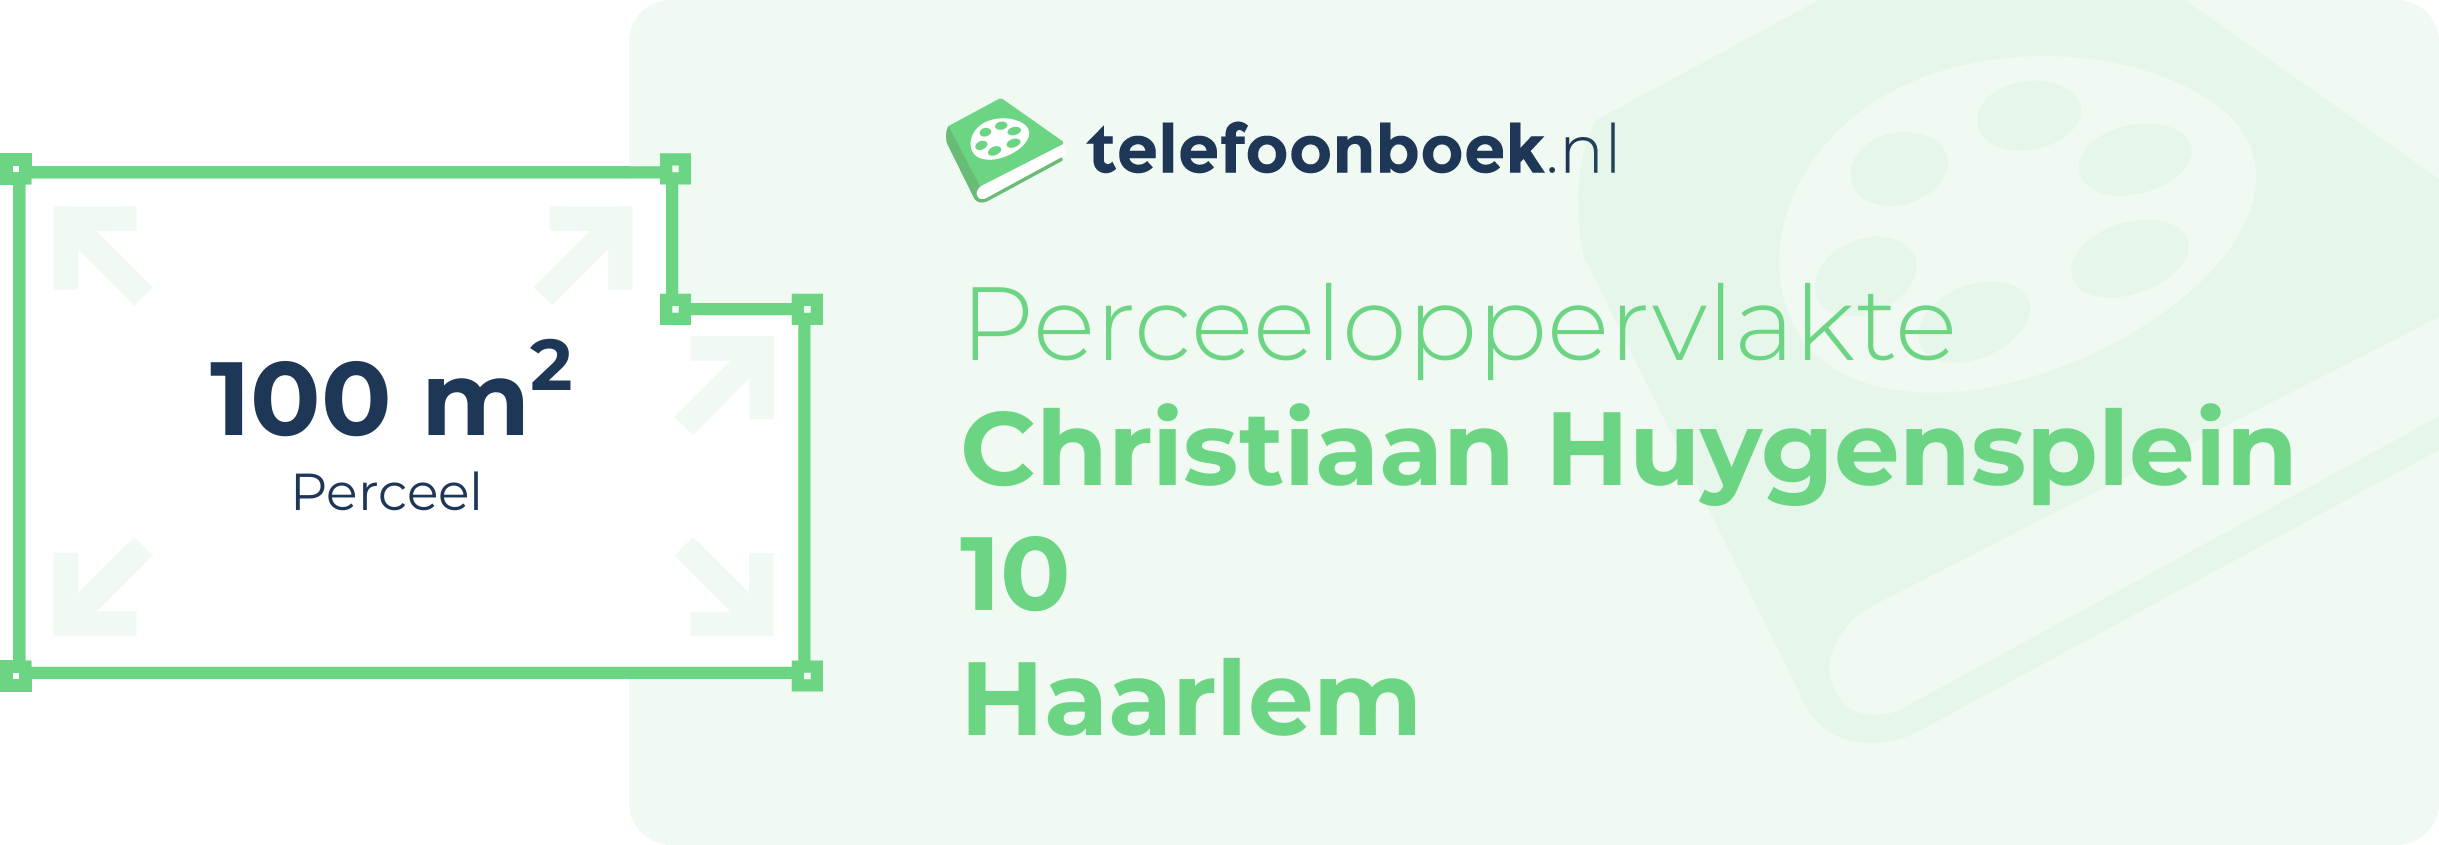 Perceeloppervlakte Christiaan Huygensplein 10 Haarlem